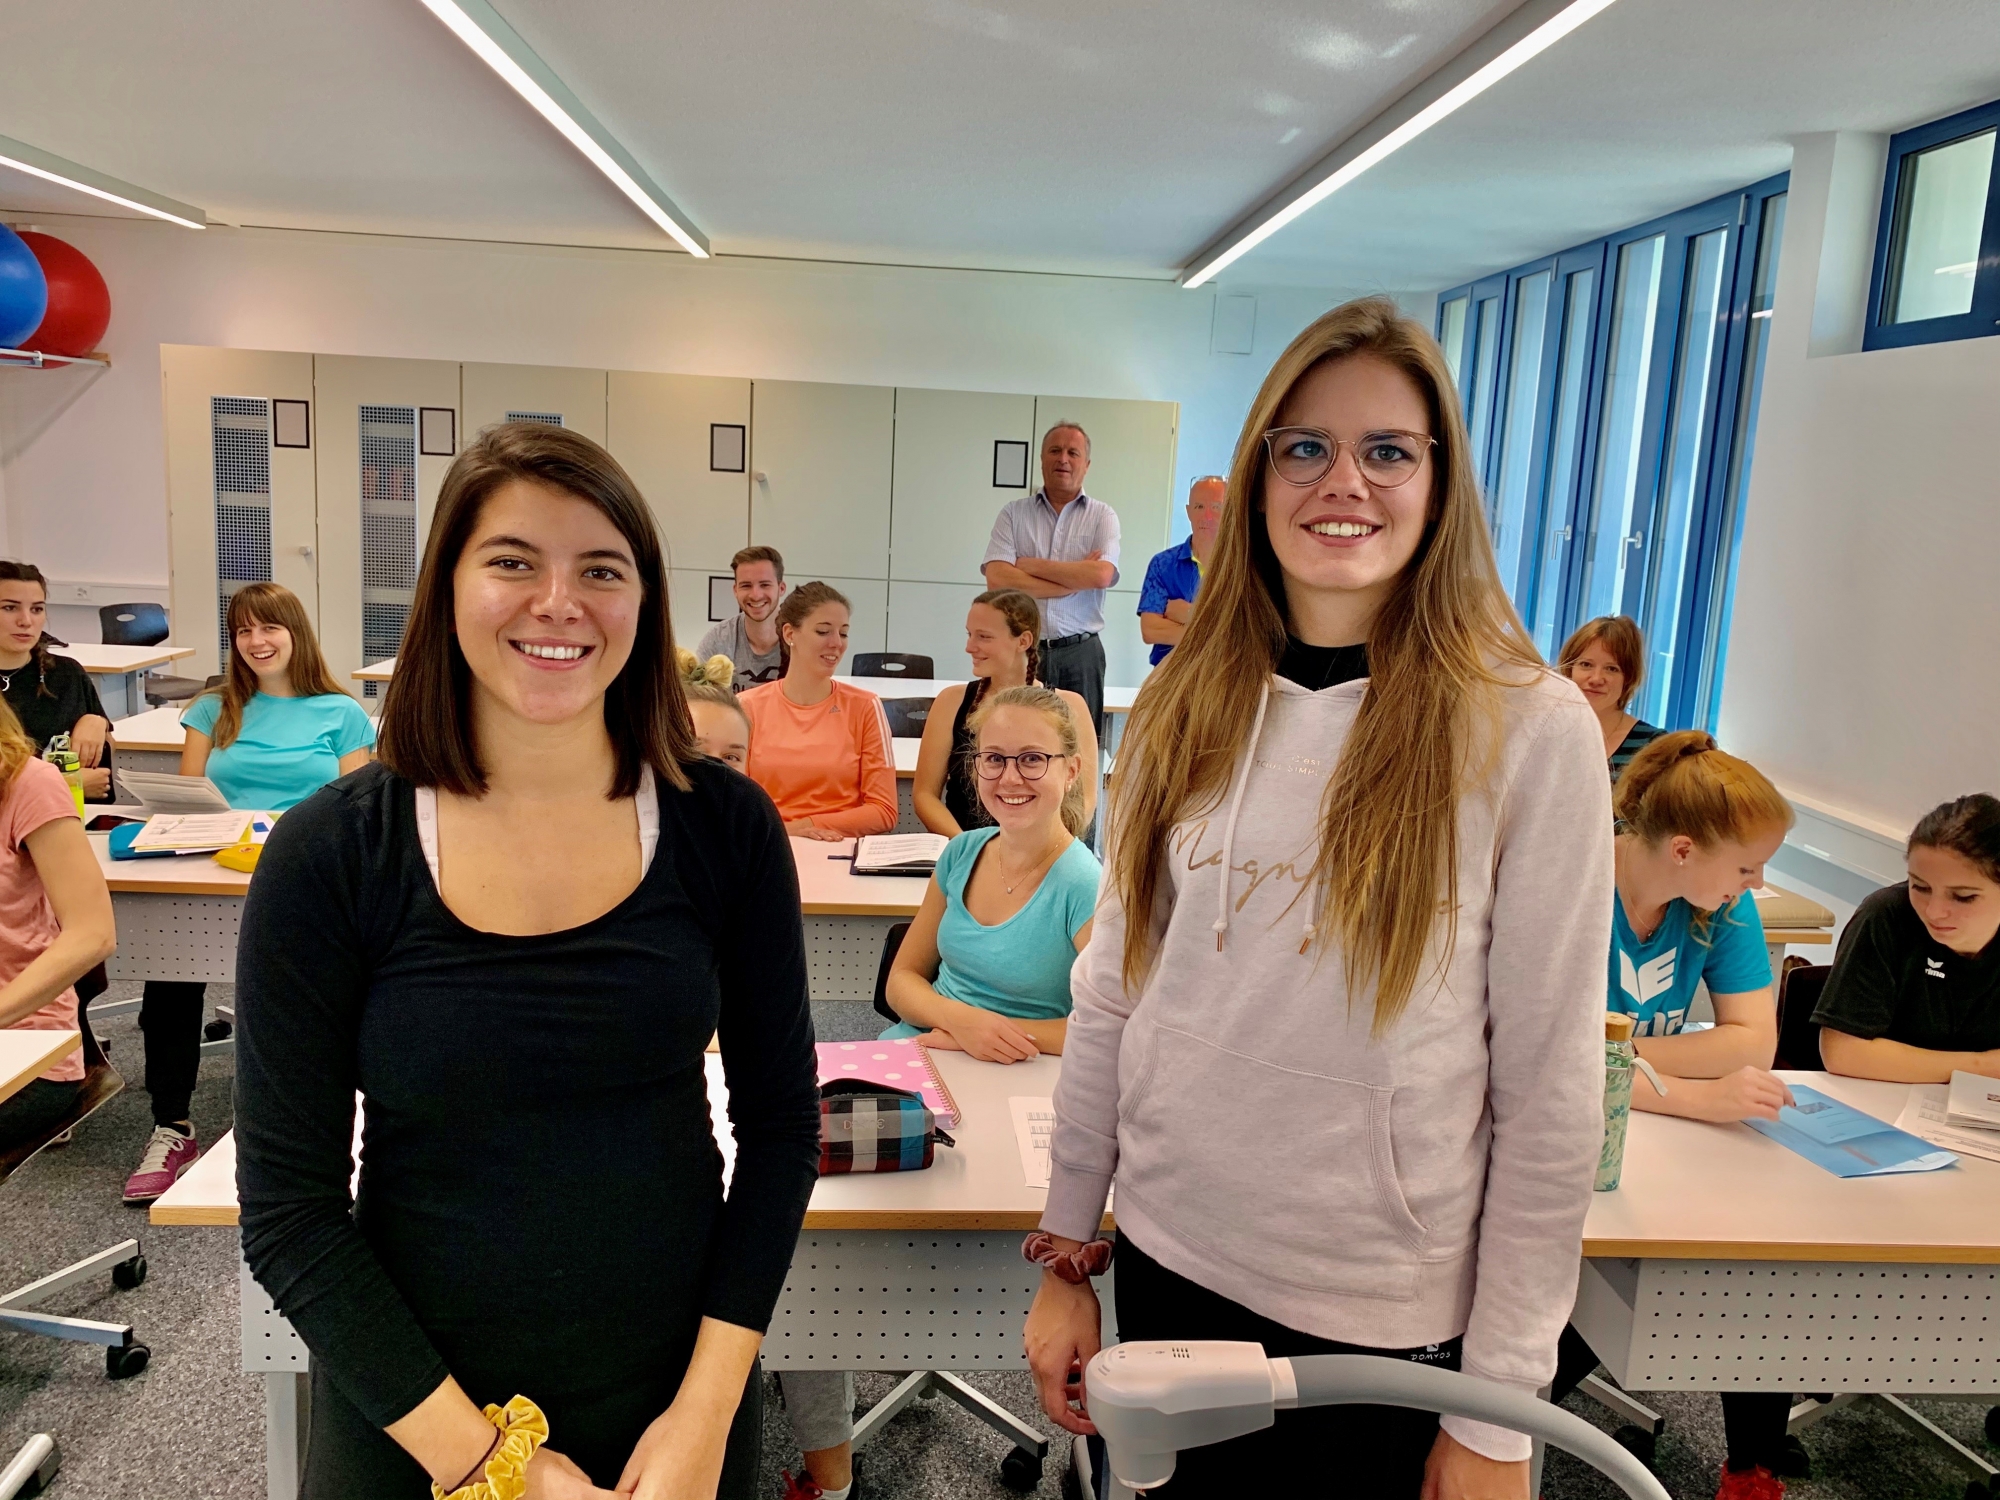 Gaëlle Sinnaeve et Mathilde Fournier ont pris en charge une classe de 7H à Zermatt alors qu’elles sont encore étudiantes. Cette semaine, elles suivaient leur formation à Brigue tandis que leurs élèves étaient en vacances.